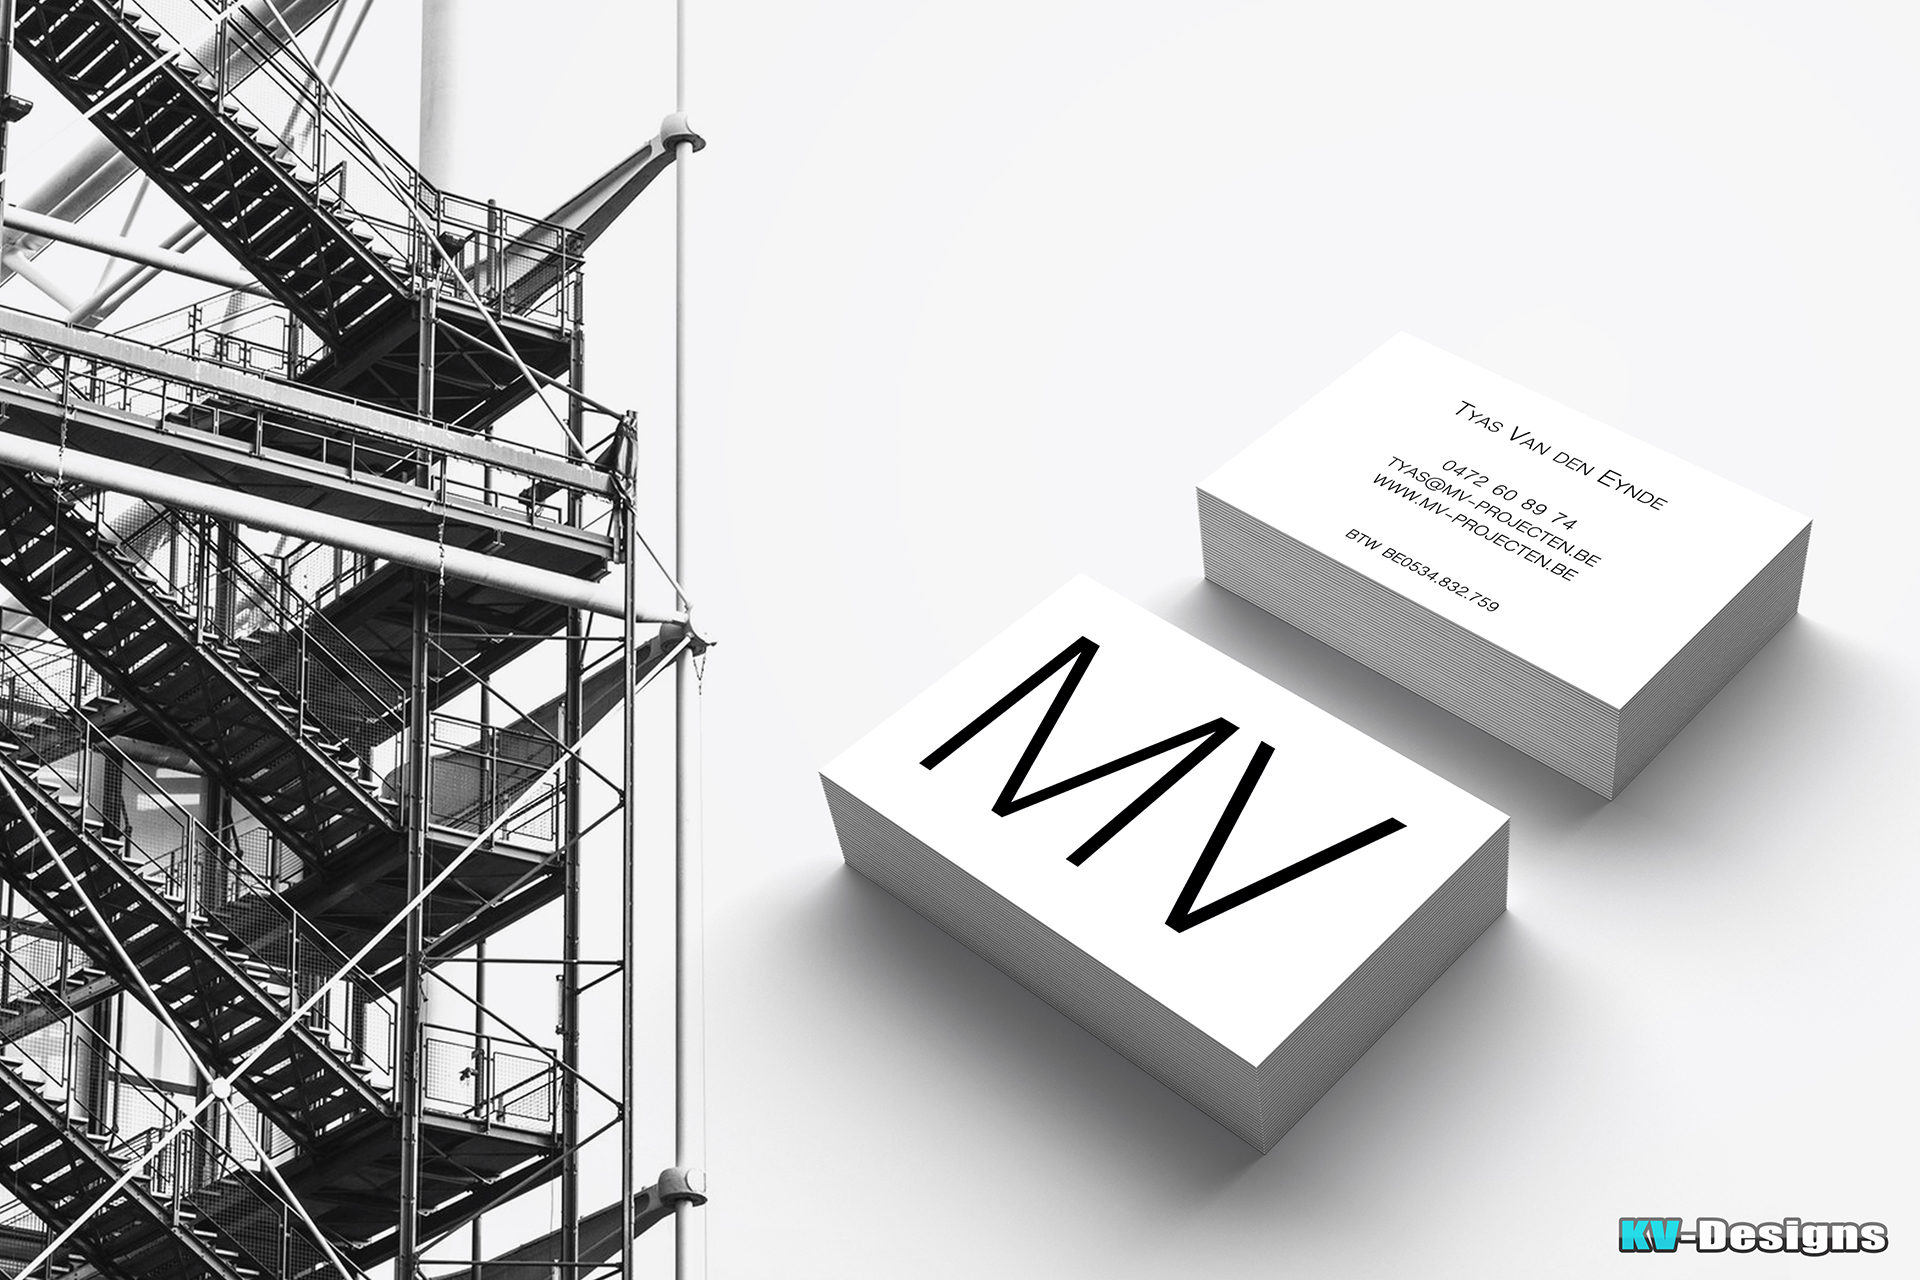 KV-Designs - project - MV-projecten - drukwerk visitekaartjes